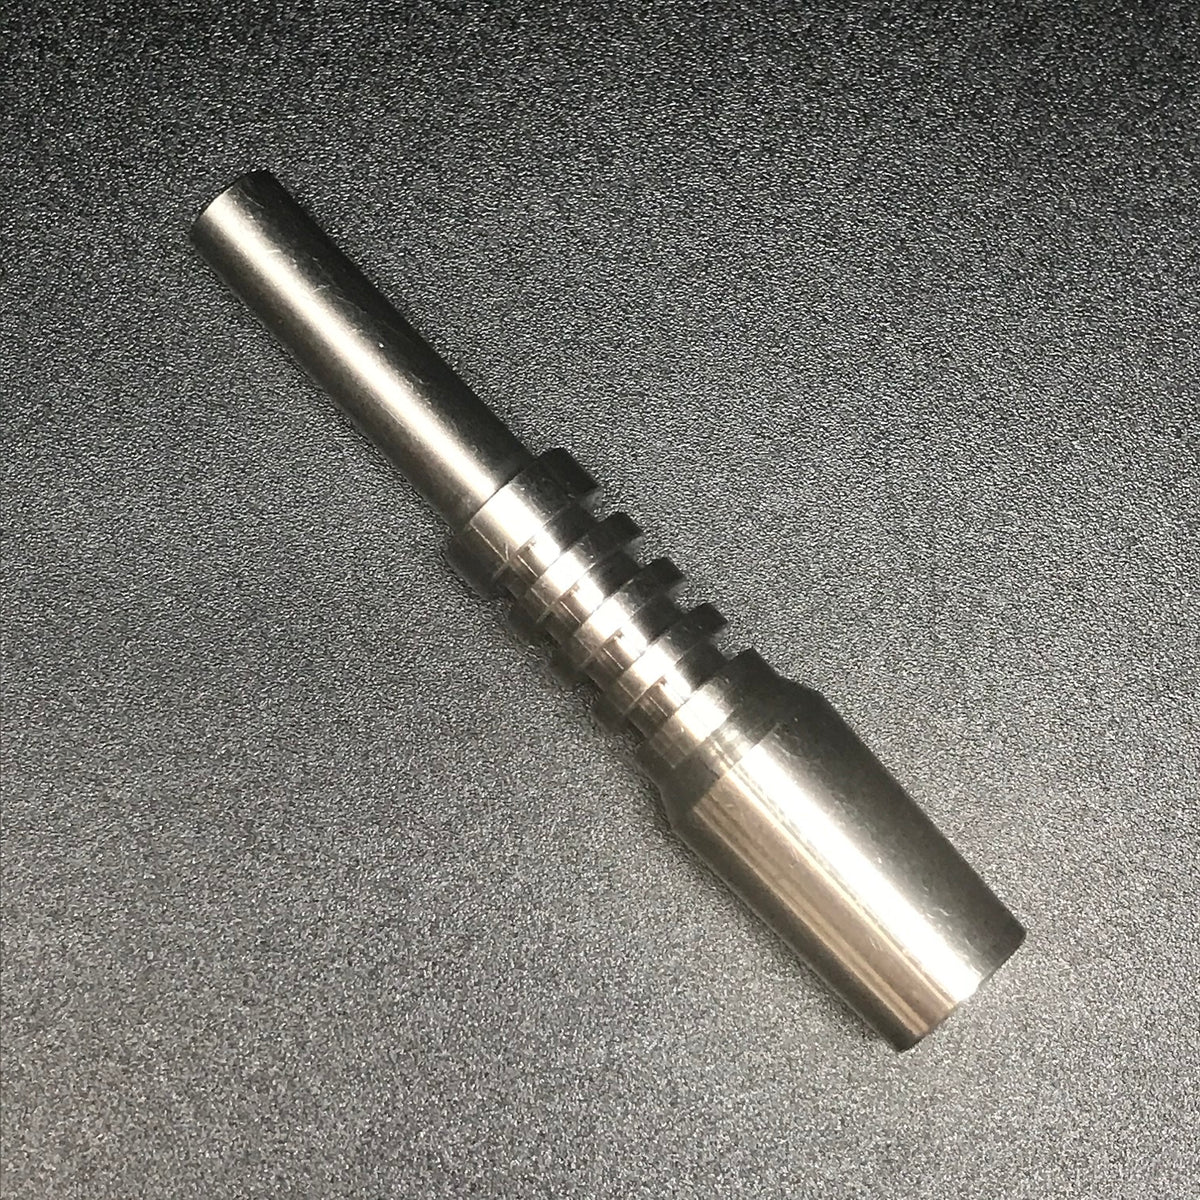 Titanium Nectar Collector Tip 14mm.